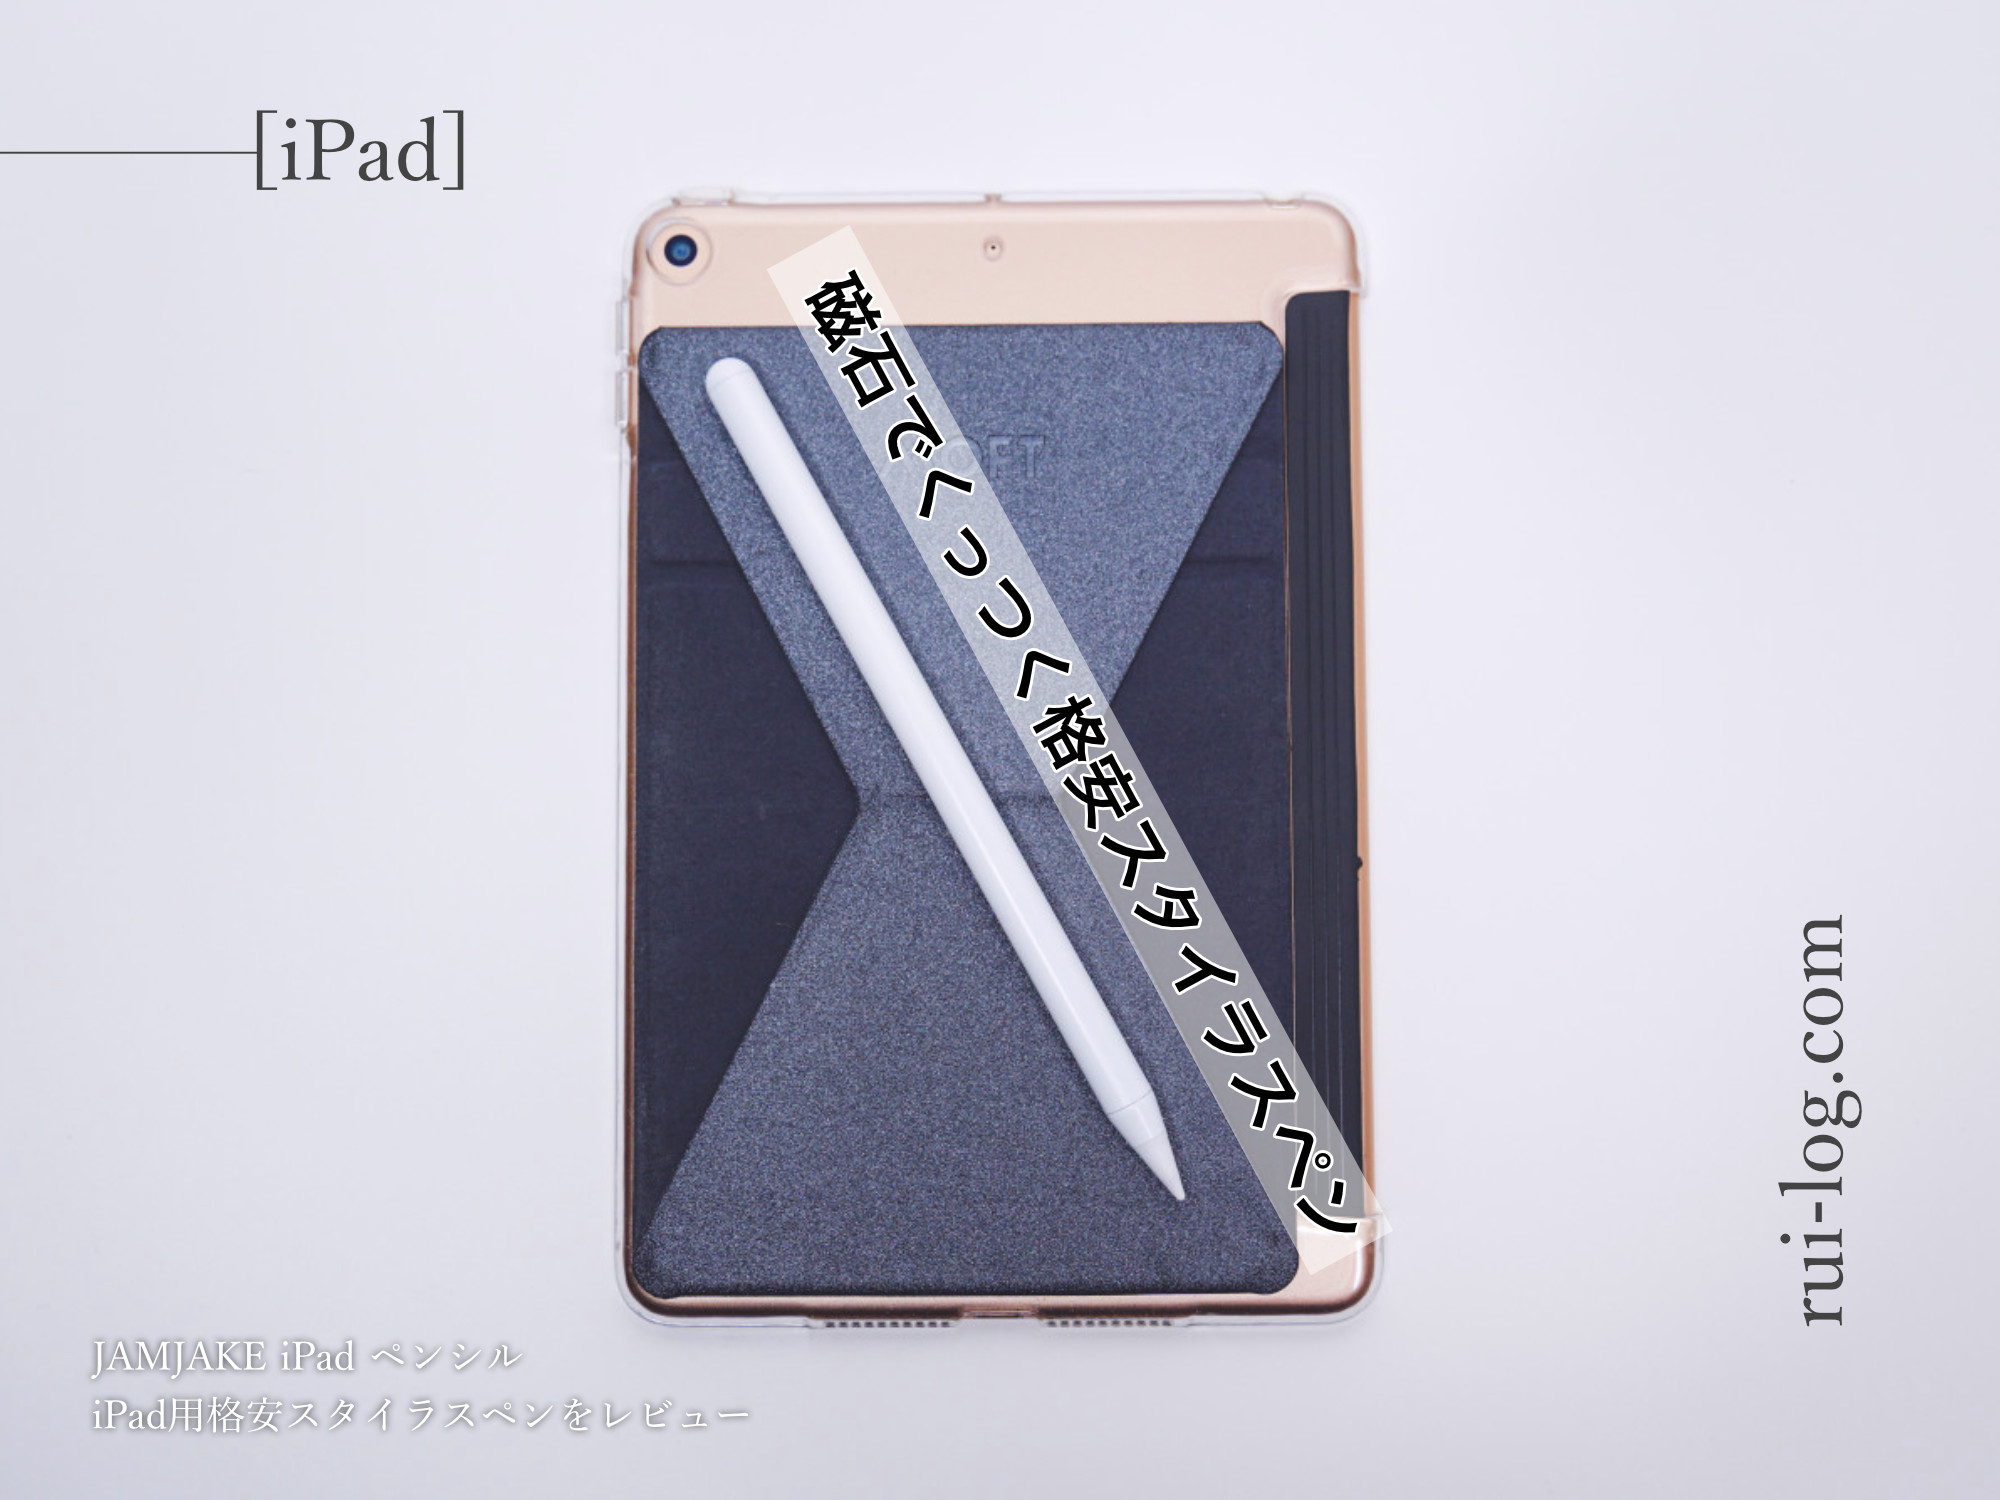 705円 デポー IPAD専用ペン タッチペン ipad ペンシル iPadペン アップルペンシル